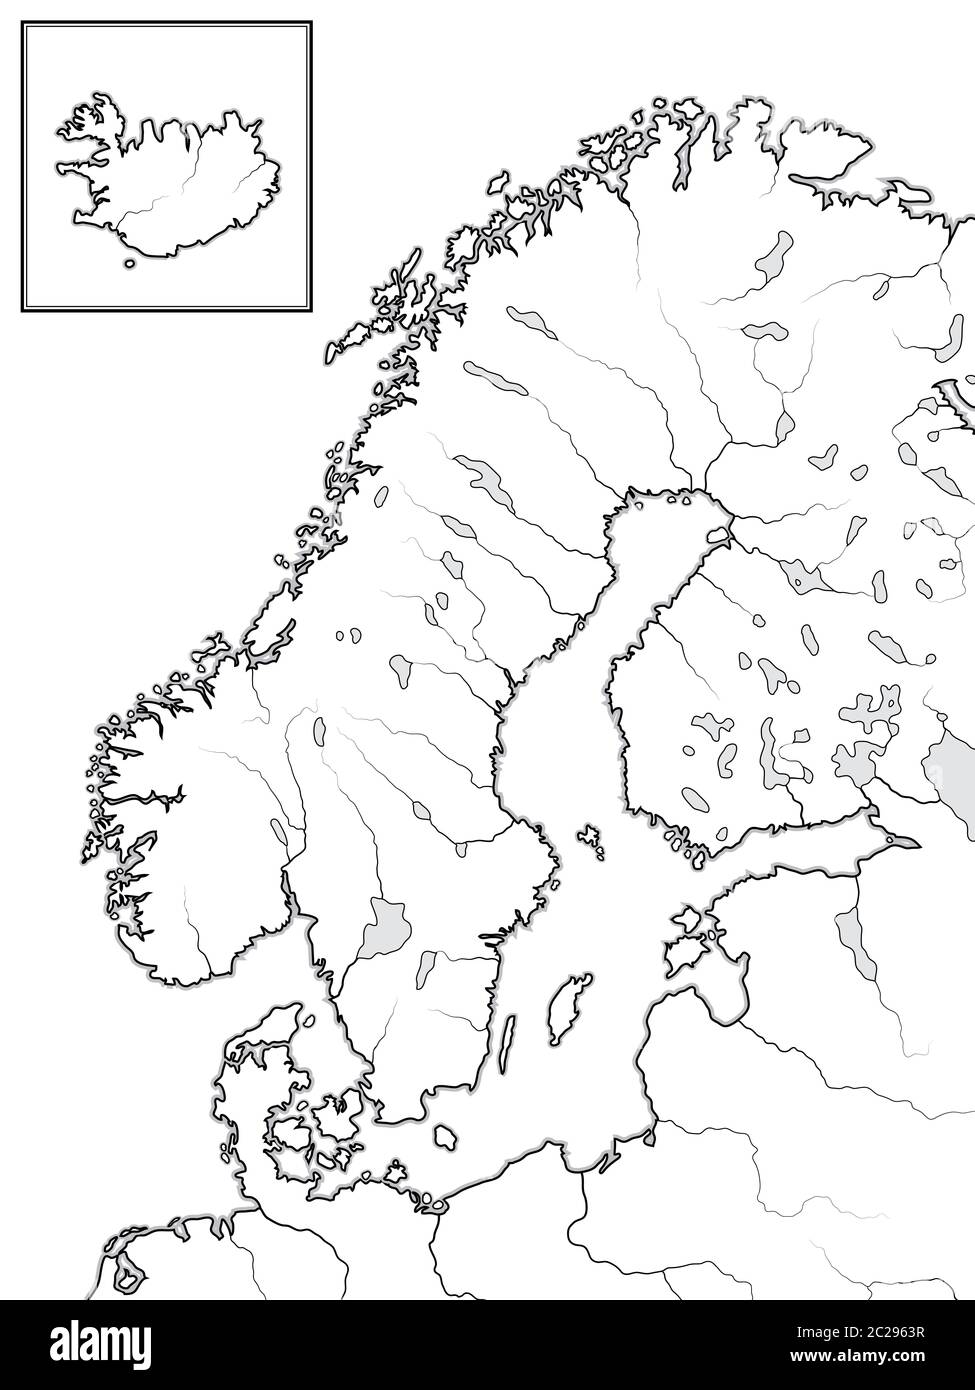 Carte des pays SCANDINAVES : Scandinavie, Suède, Norvège, Finlande, Danemark et Islande. Carte géographique. Banque D'Images